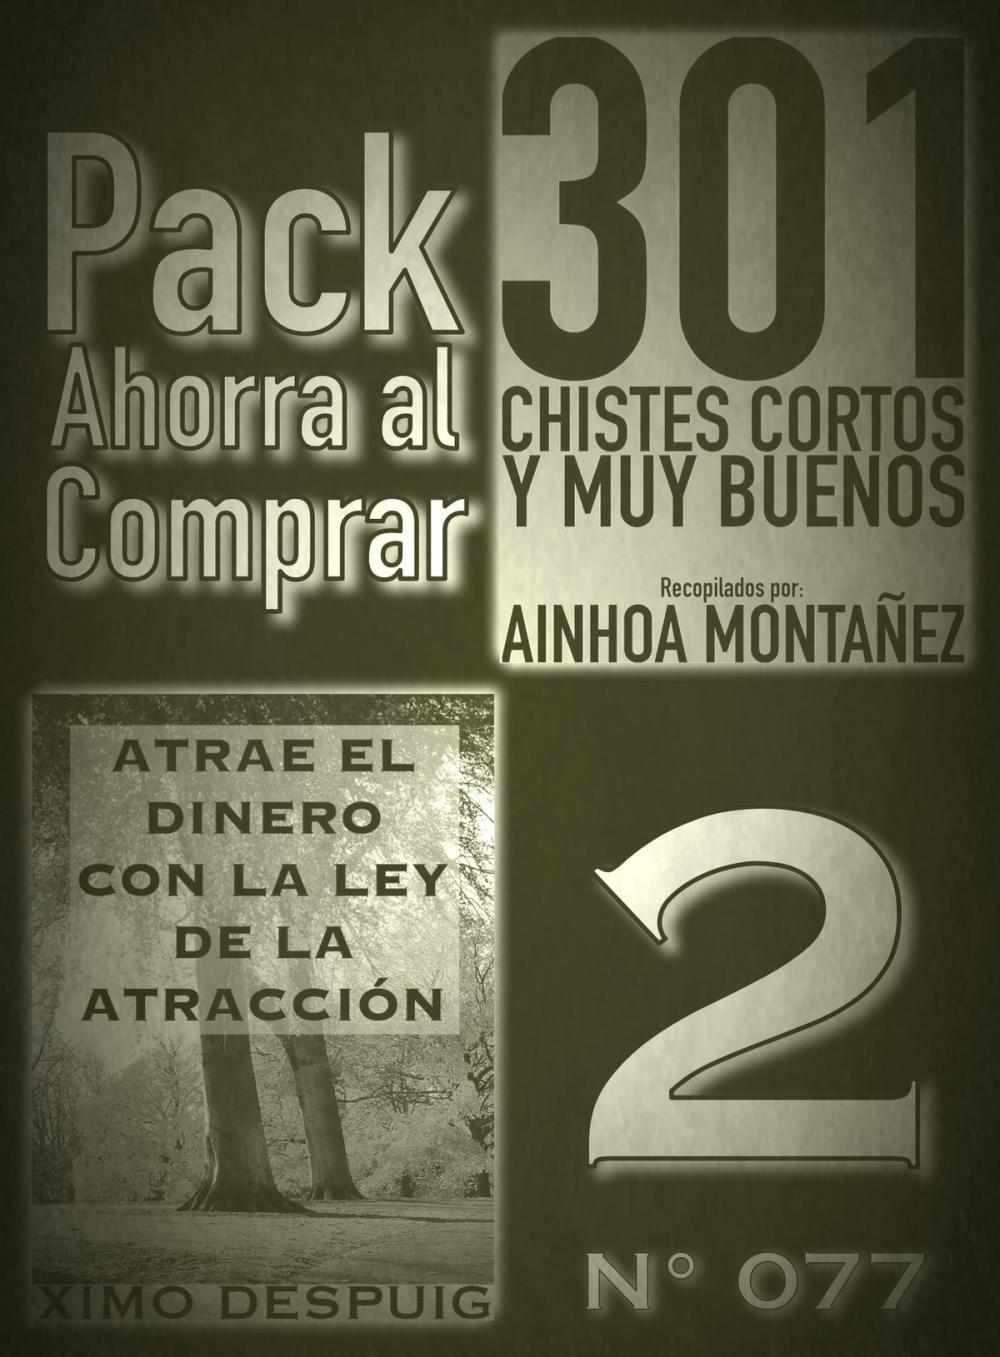 Big bigCover of Pack Ahorra al Comprar 2 (Nº 077)